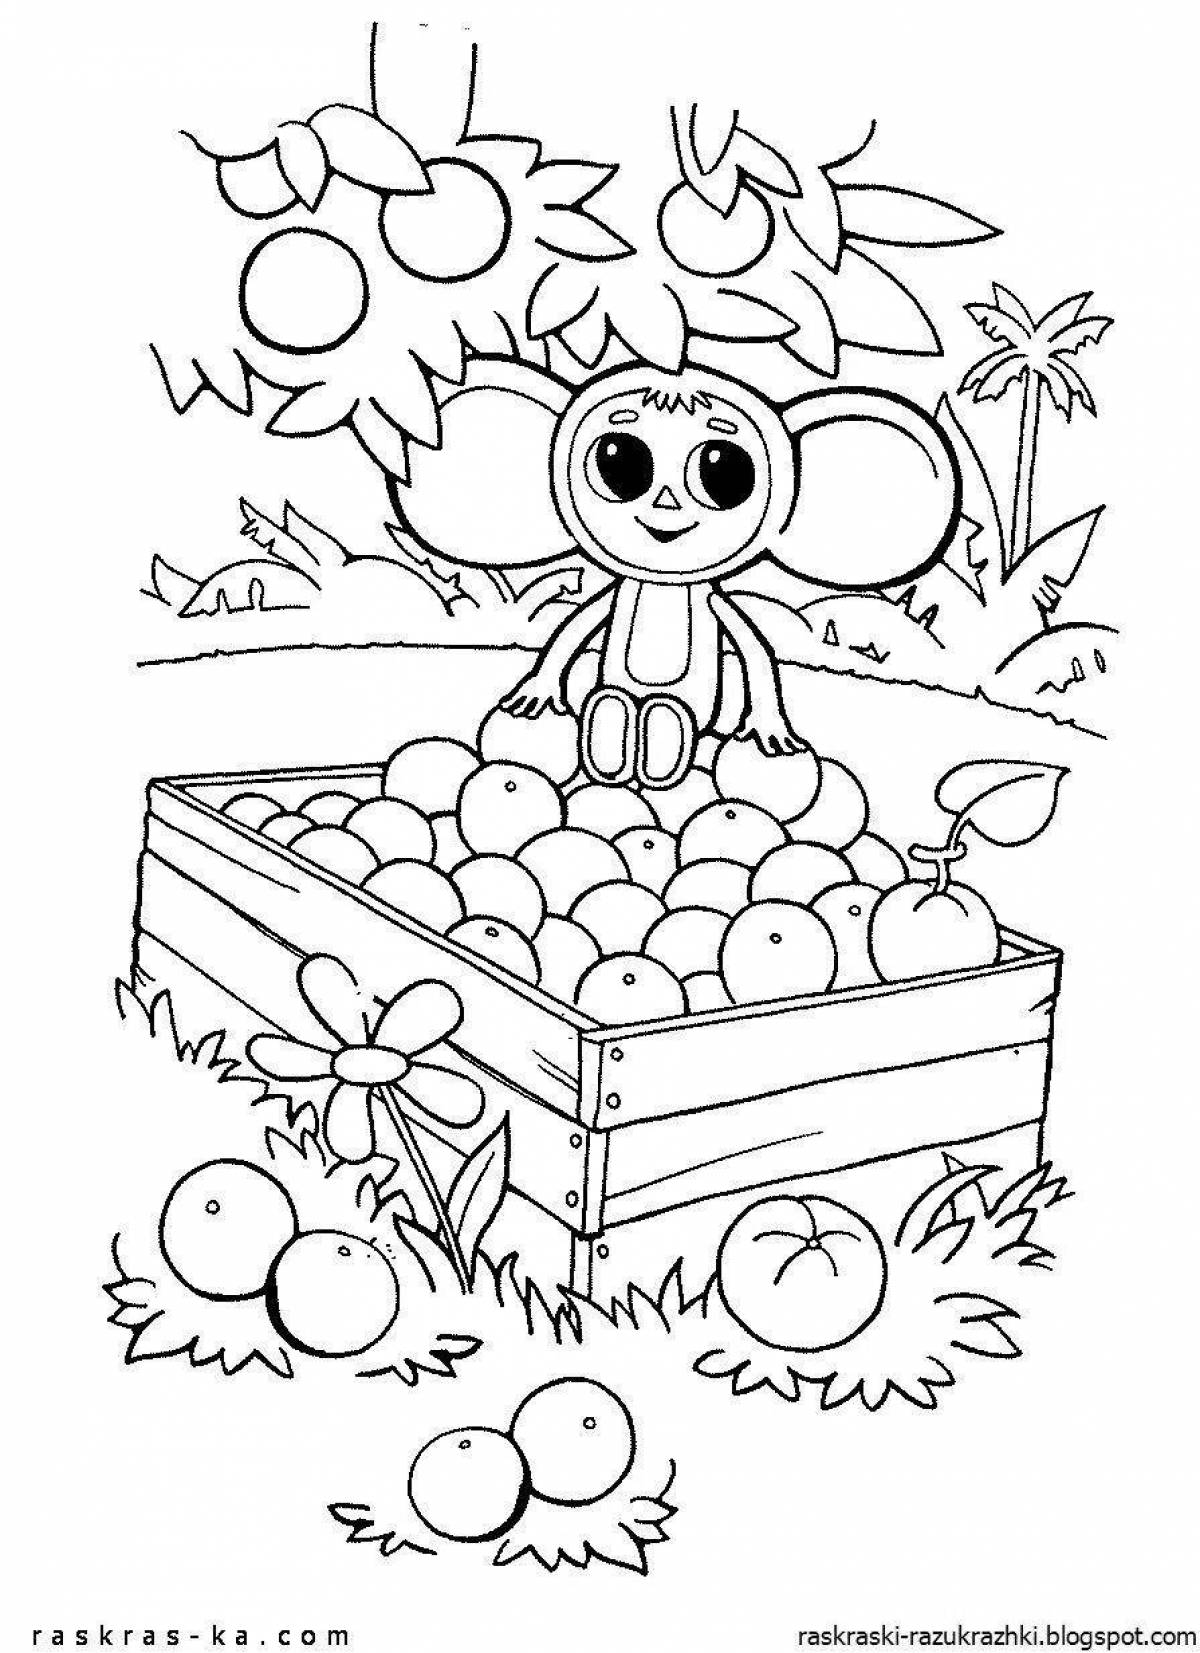 Entertaining coloring Cheburashka for children